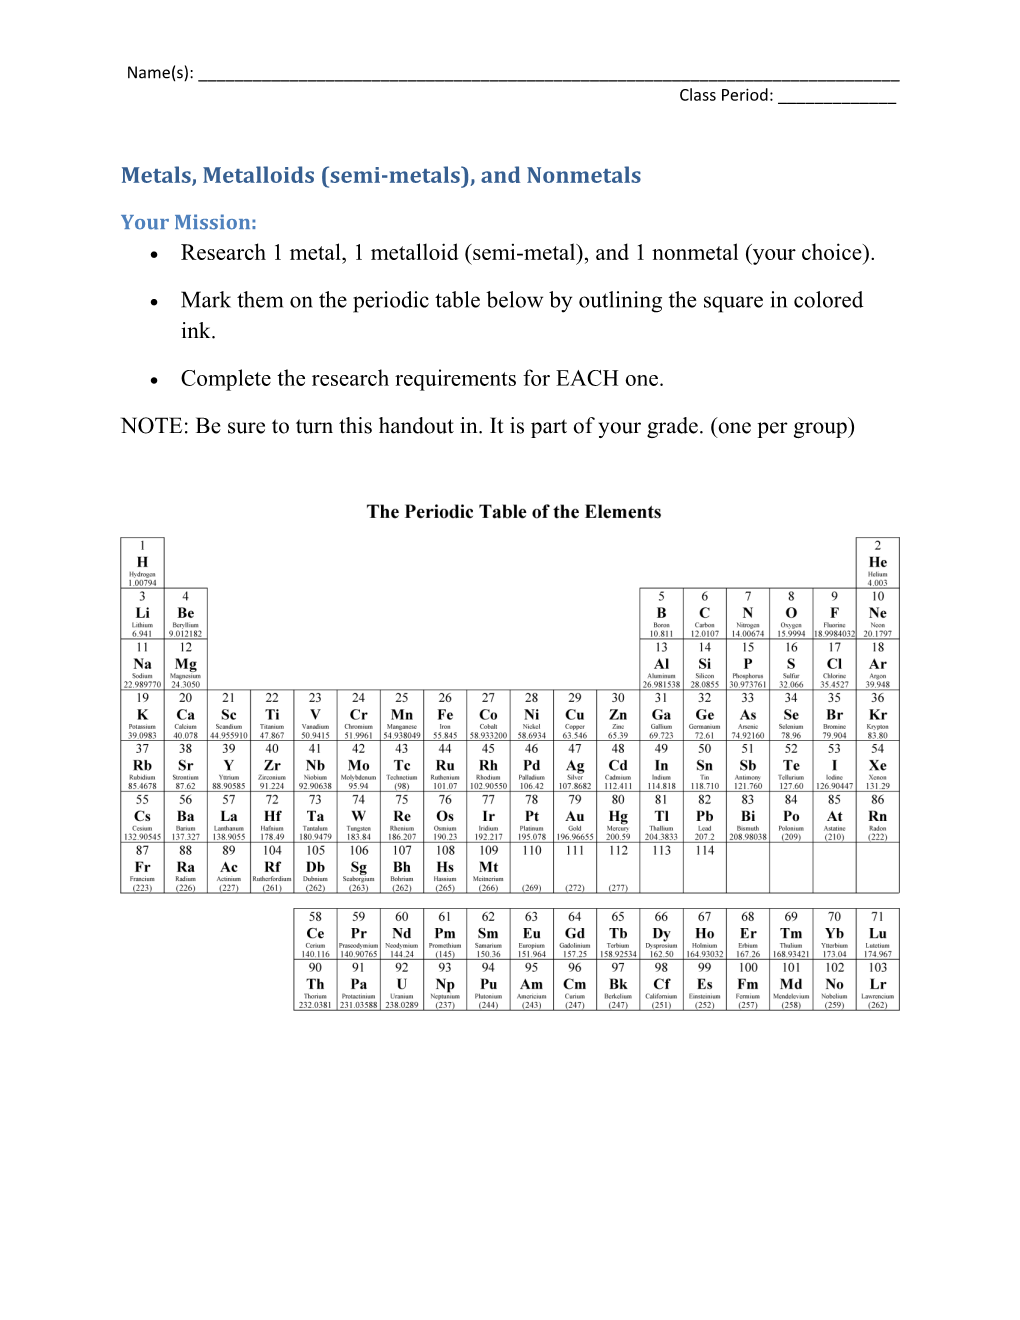 Metals, Metalloids (Semi-Metals), and Nonmetals